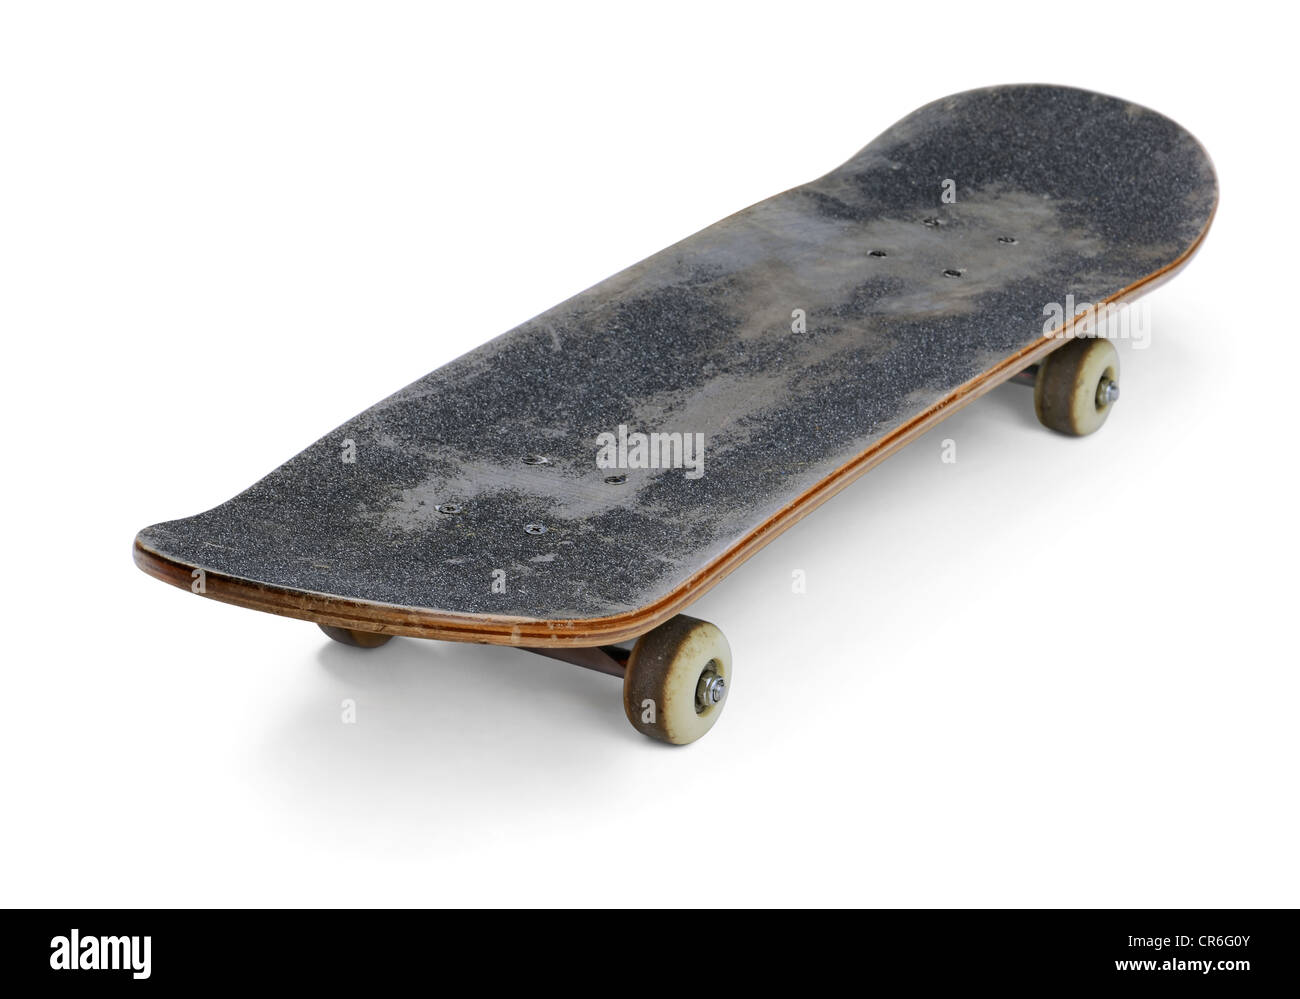 Altes skateboard Ausgeschnittene Stockfotos und -bilder - Alamy